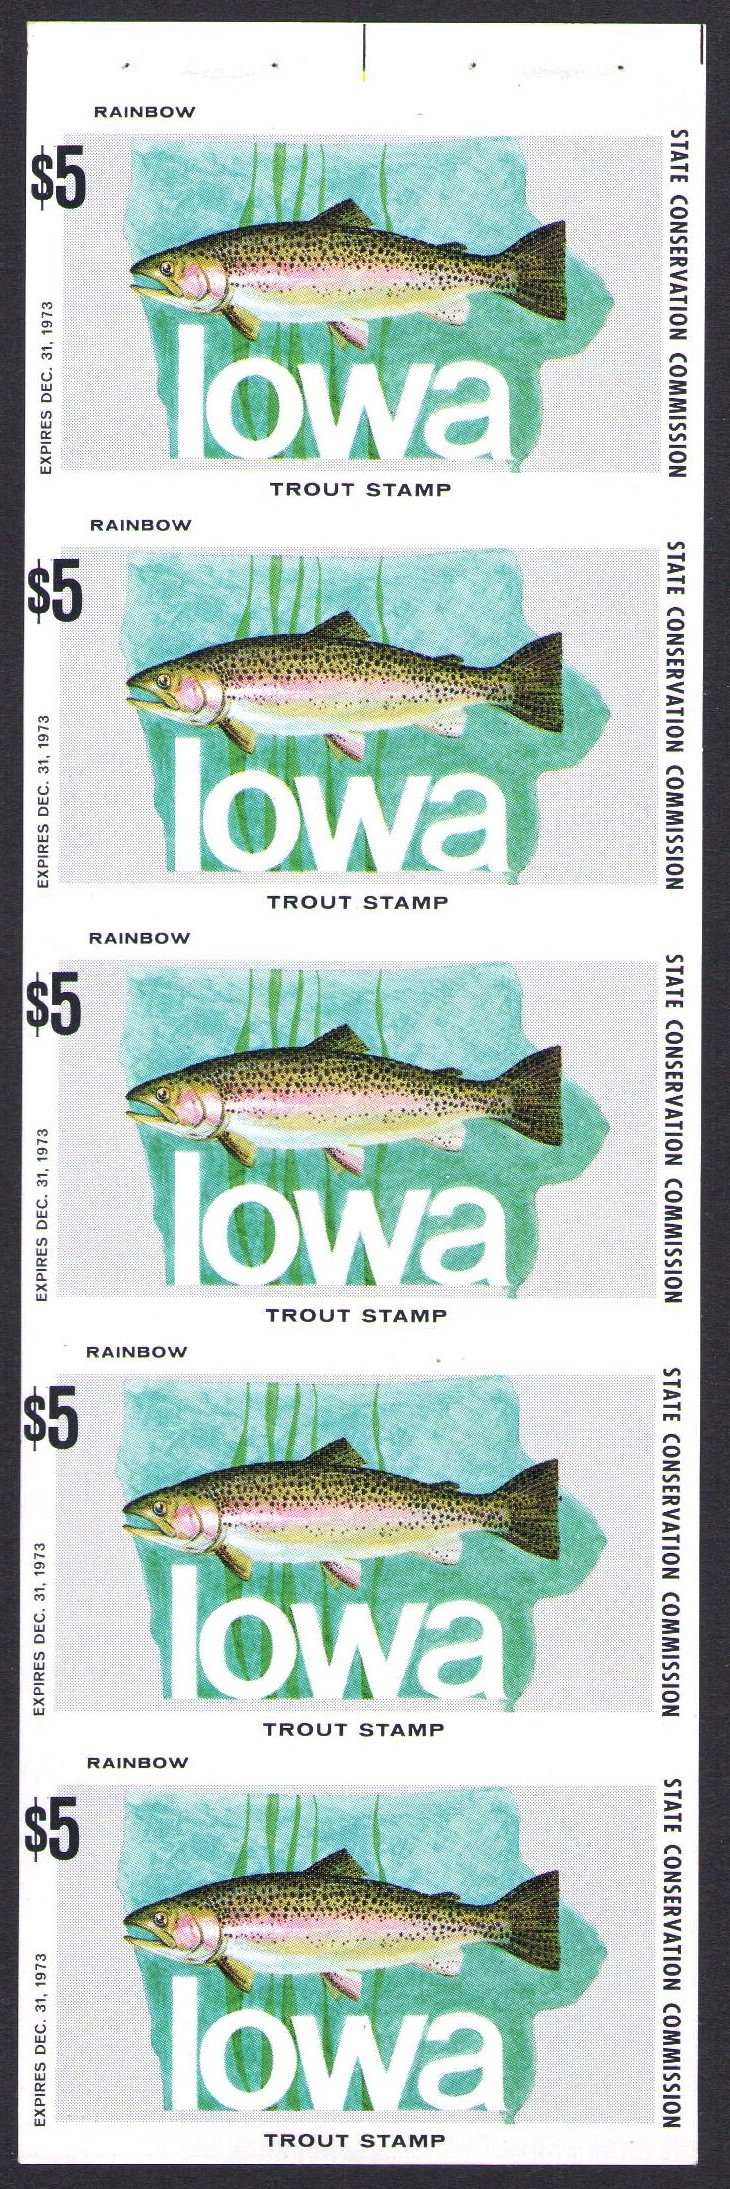 1973 Iowa Trout Legitimate Imperforate Booklet Pane